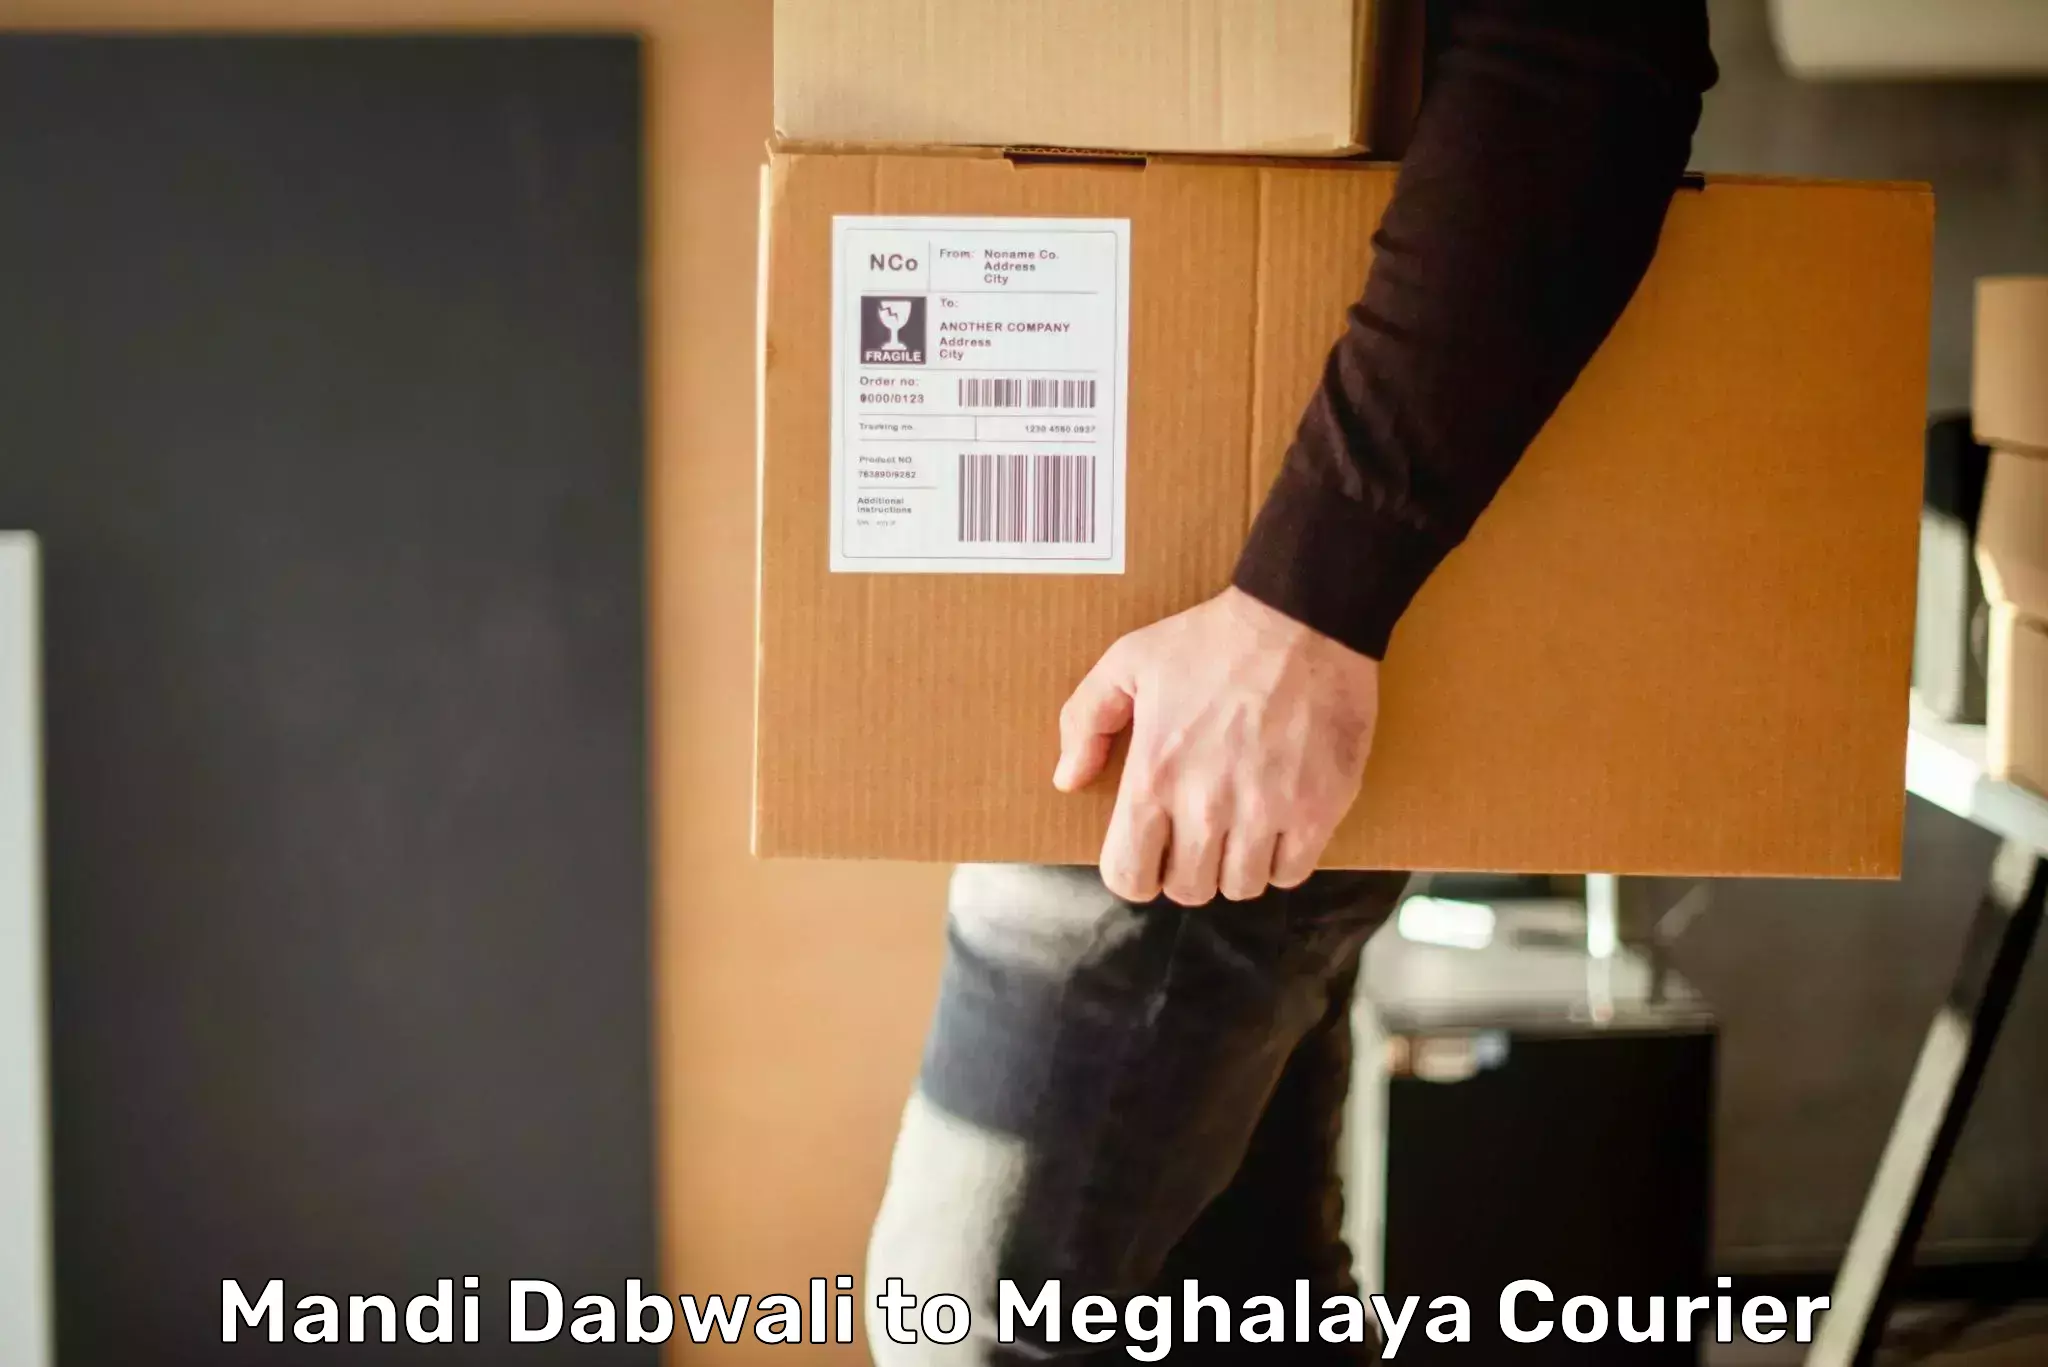 Fast-track shipping solutions Mandi Dabwali to Meghalaya